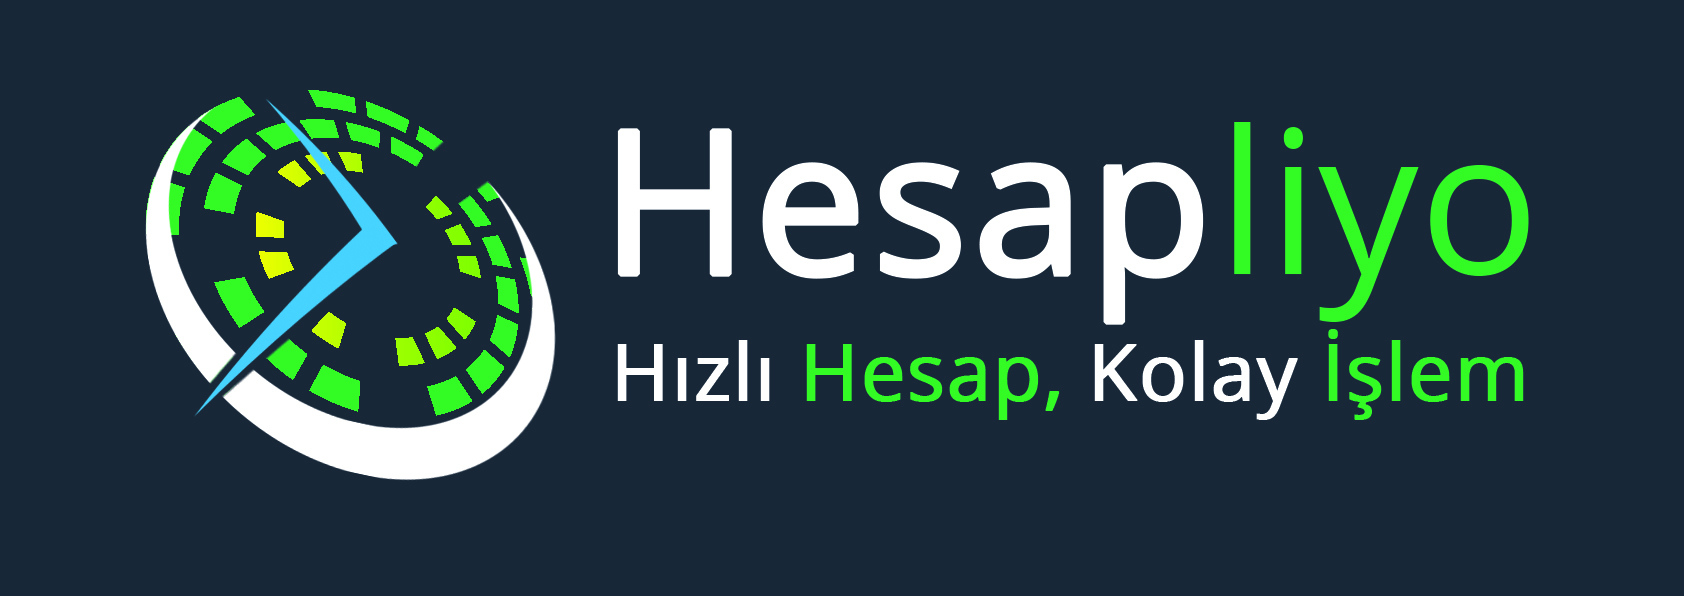 www.hesapliyo.com